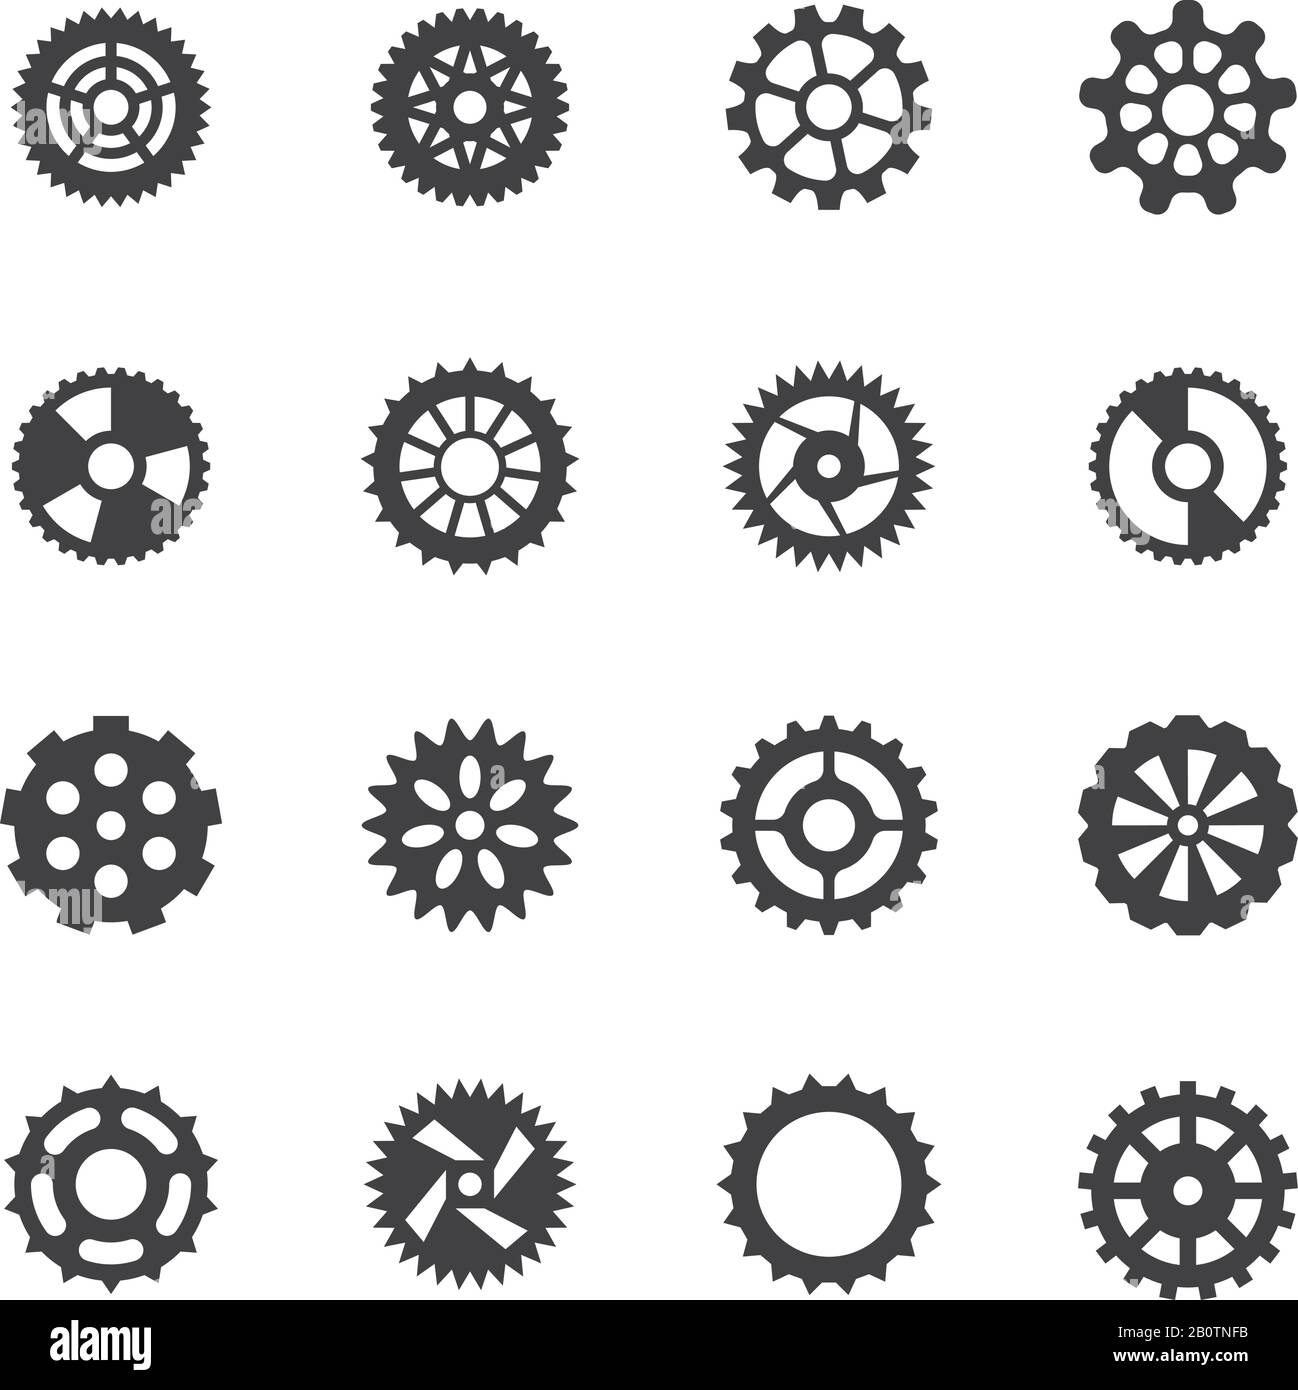 Icone dei vettori di trasmissione. Simboli della trasmissione con ingranaggi del meccanismo e della ruota dentata. Ruota dentata del meccanismo di trasmissione, illustrazione della ruota dentata meccanica Illustrazione Vettoriale